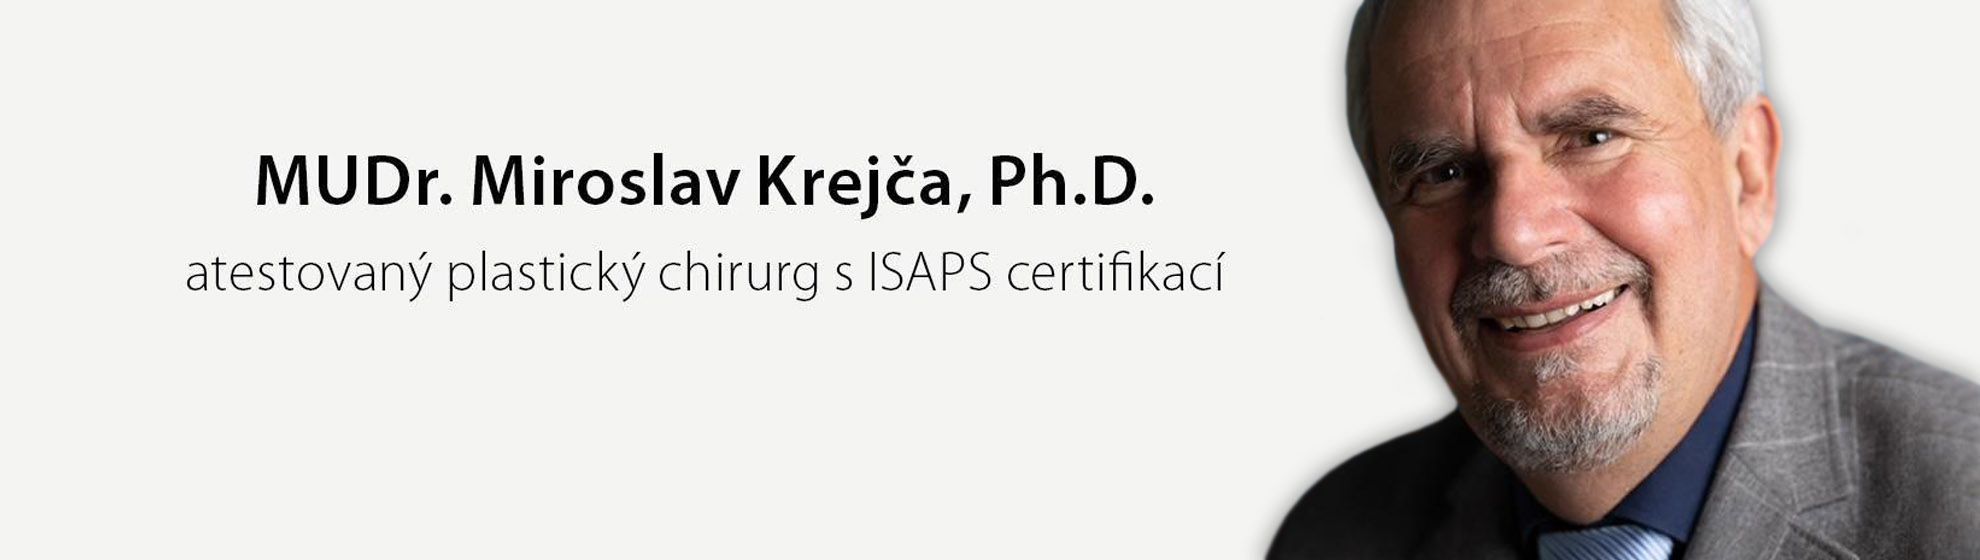 MUDr. Miroslav Krejča Ph.D.